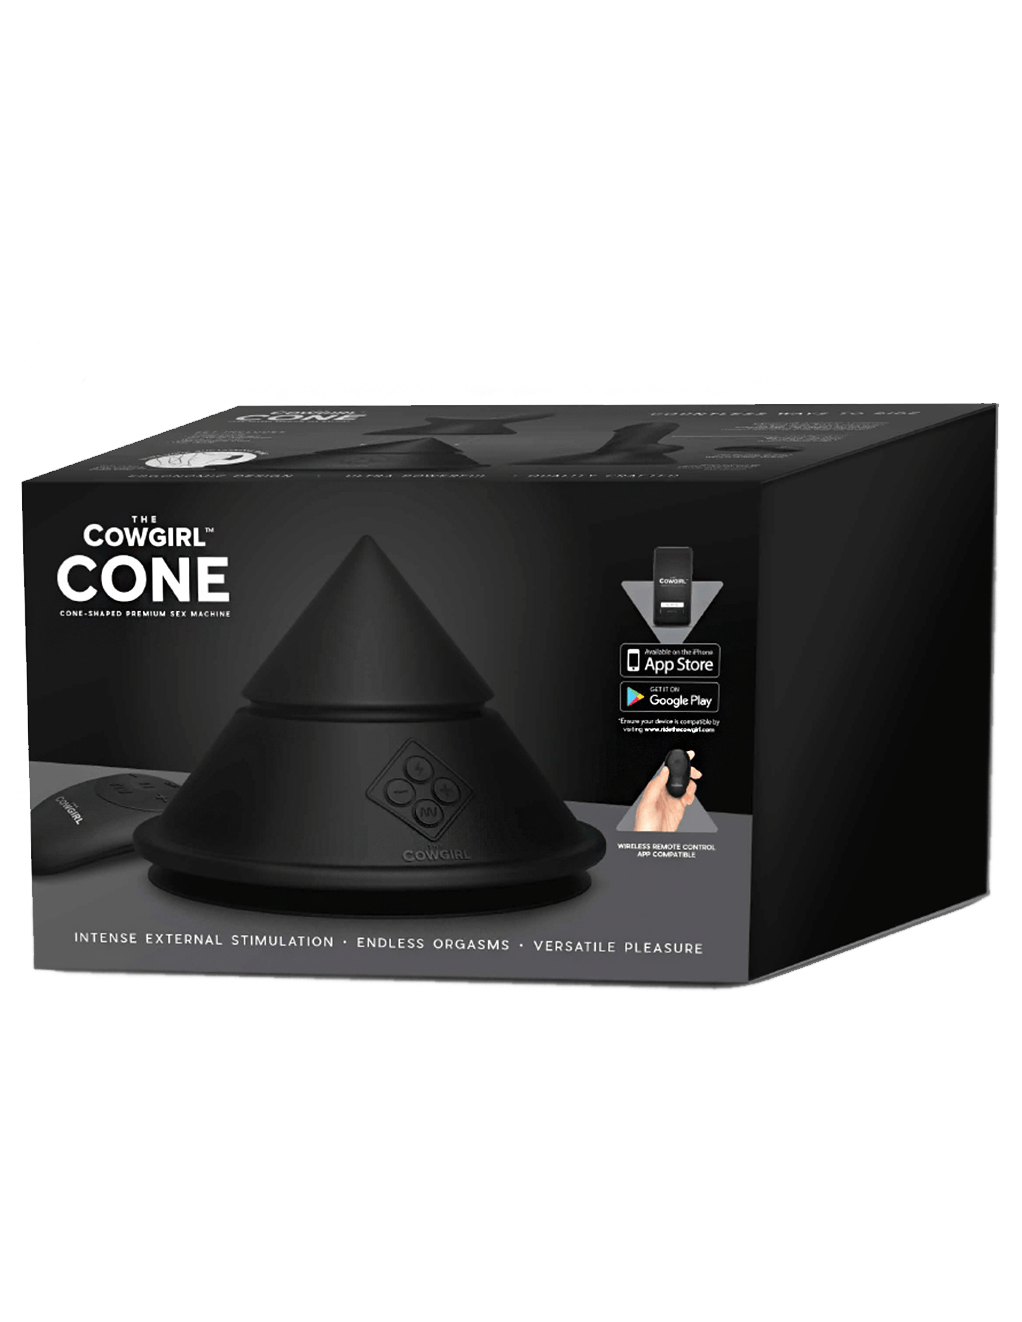 The Cowgirl Cone - Box